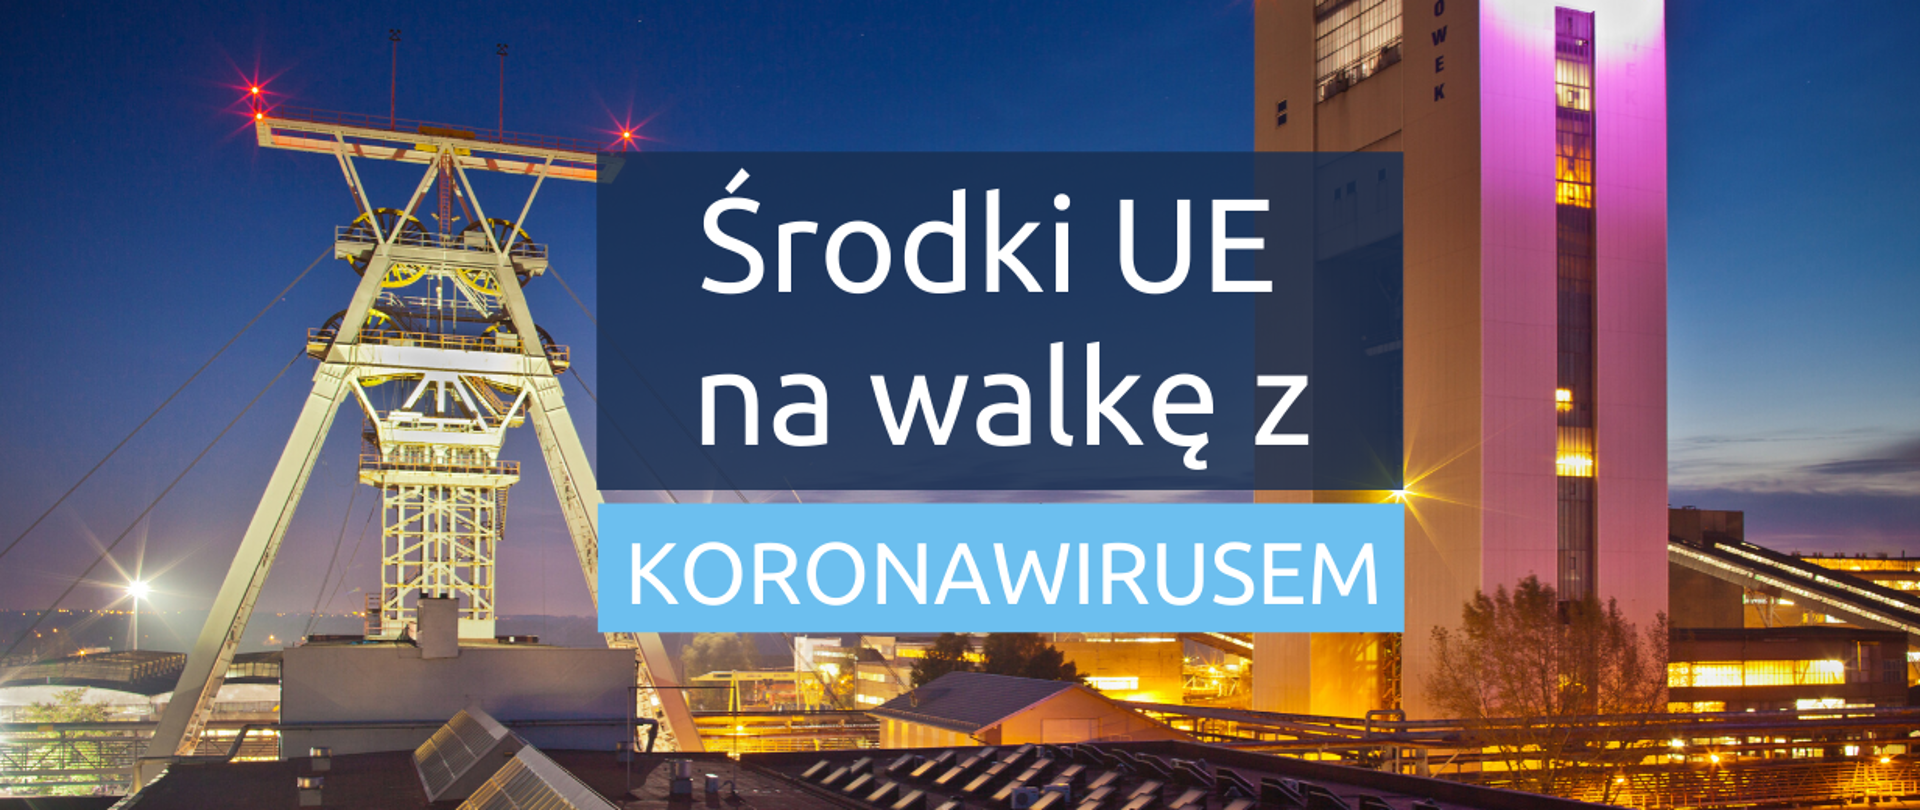 Napis "Środki UE na walkę z koronawirusem" na tle panoramy Śląska nocą, widoczne szyb górniczy oraz wysoki budynek.